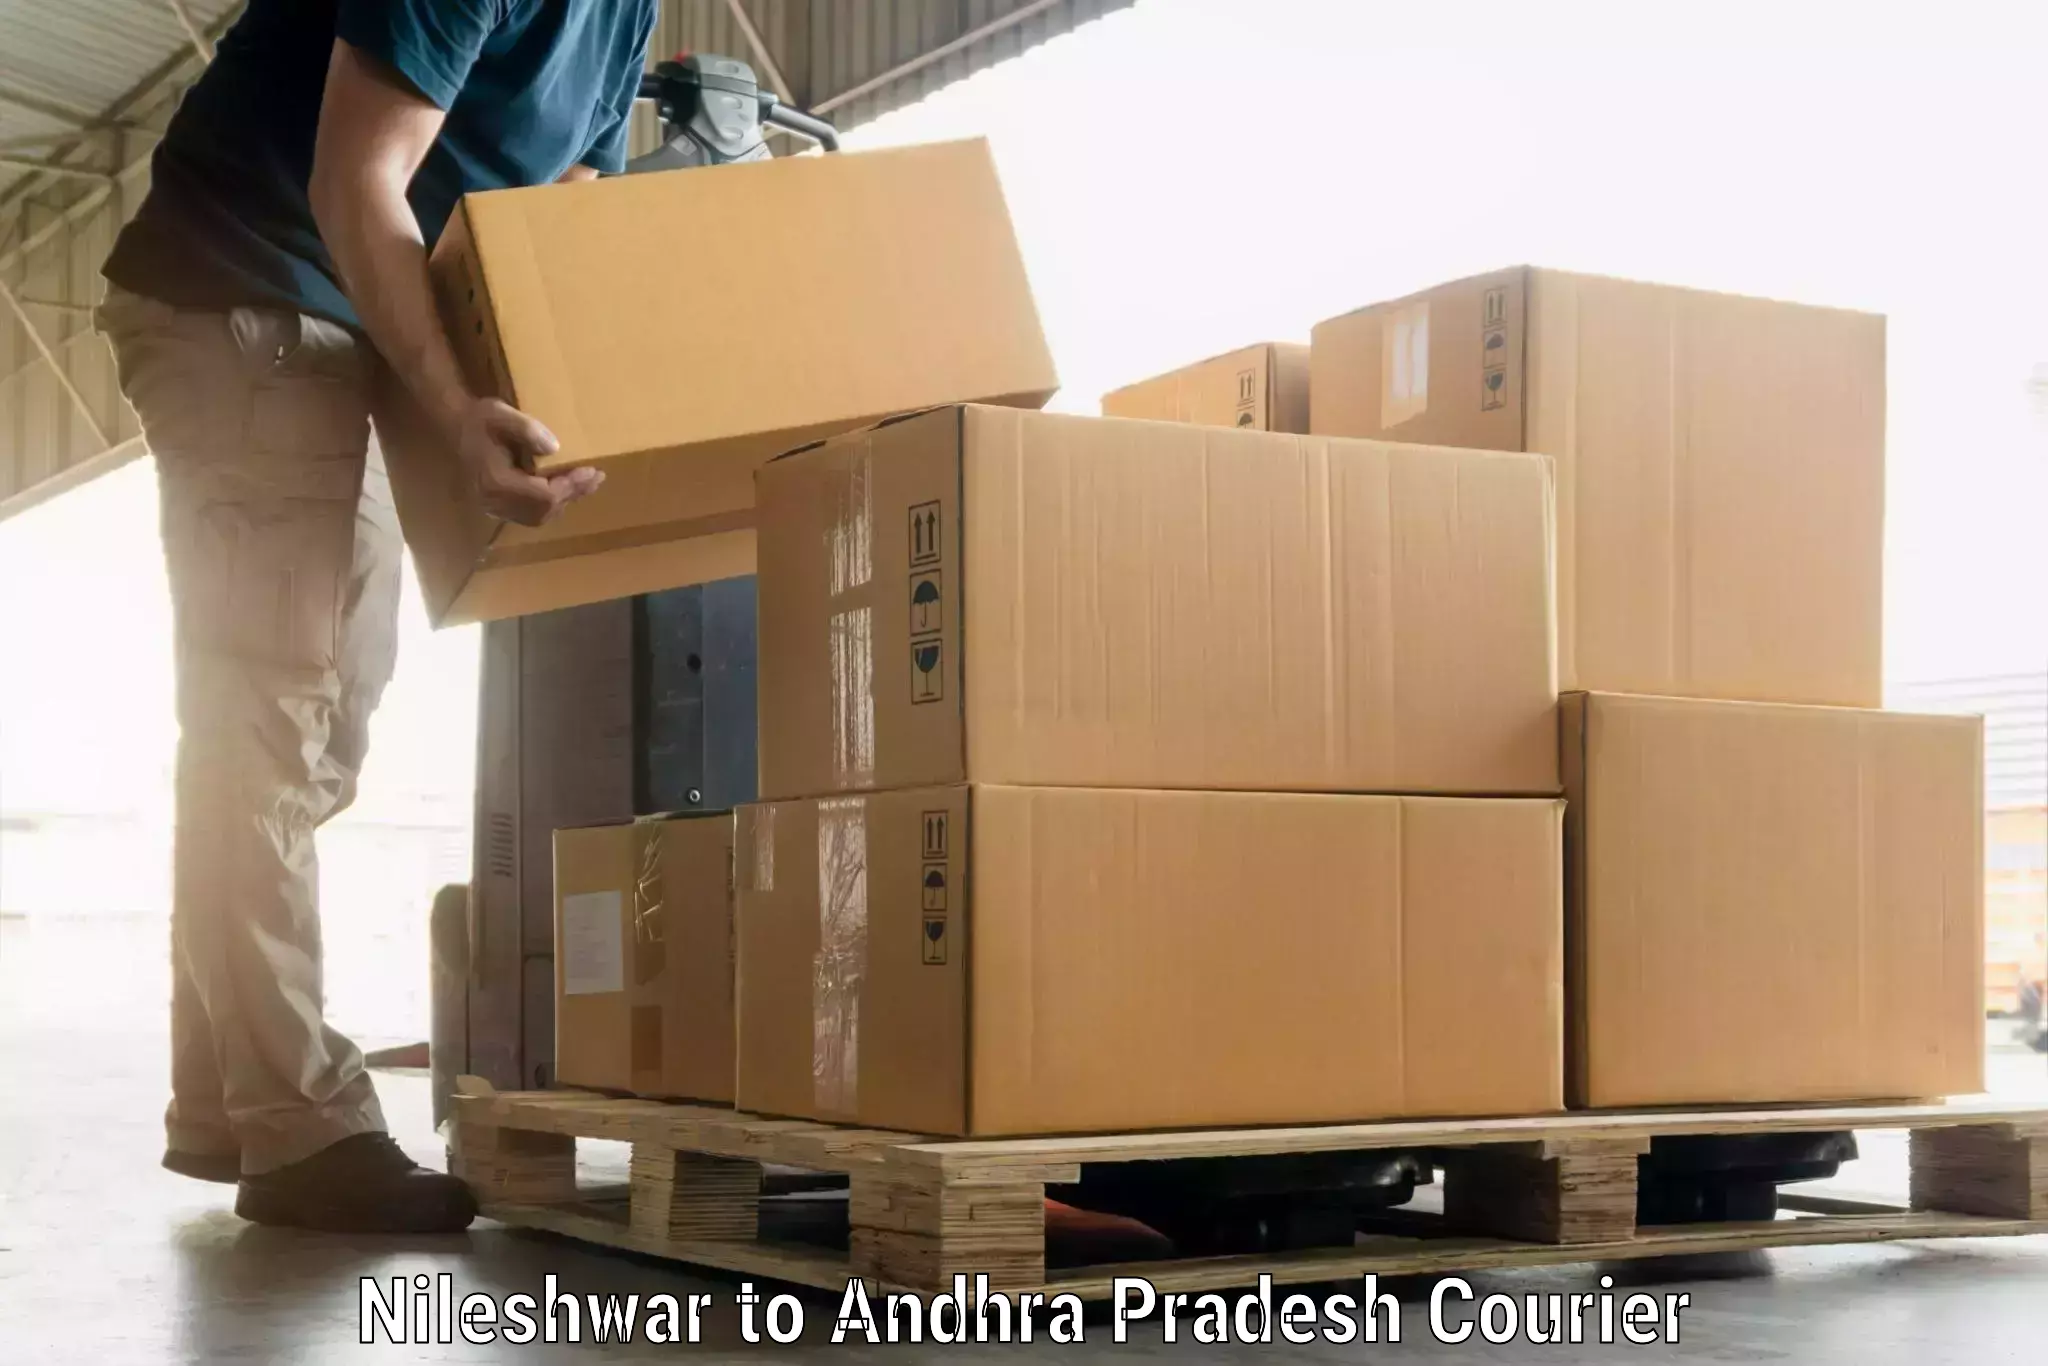 Luggage shipping service Nileshwar to Yerragondapalem